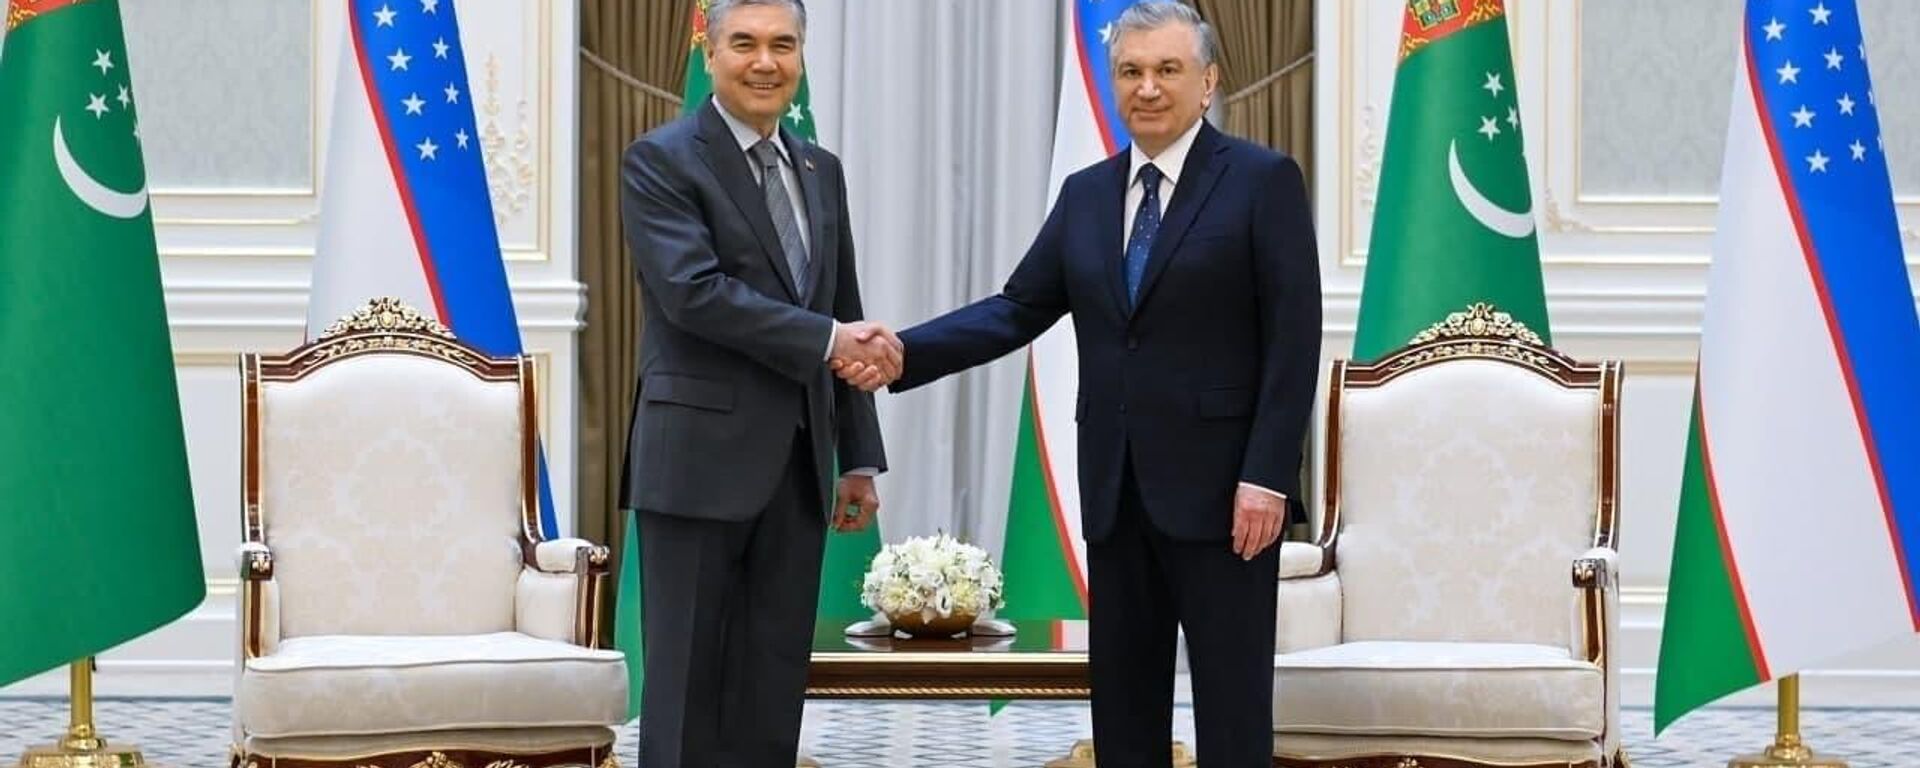 В резиденции Куксарой состоялась церемония официальной встречи Президента Туркменистана - Sputnik Ўзбекистон, 1920, 05.10.2021